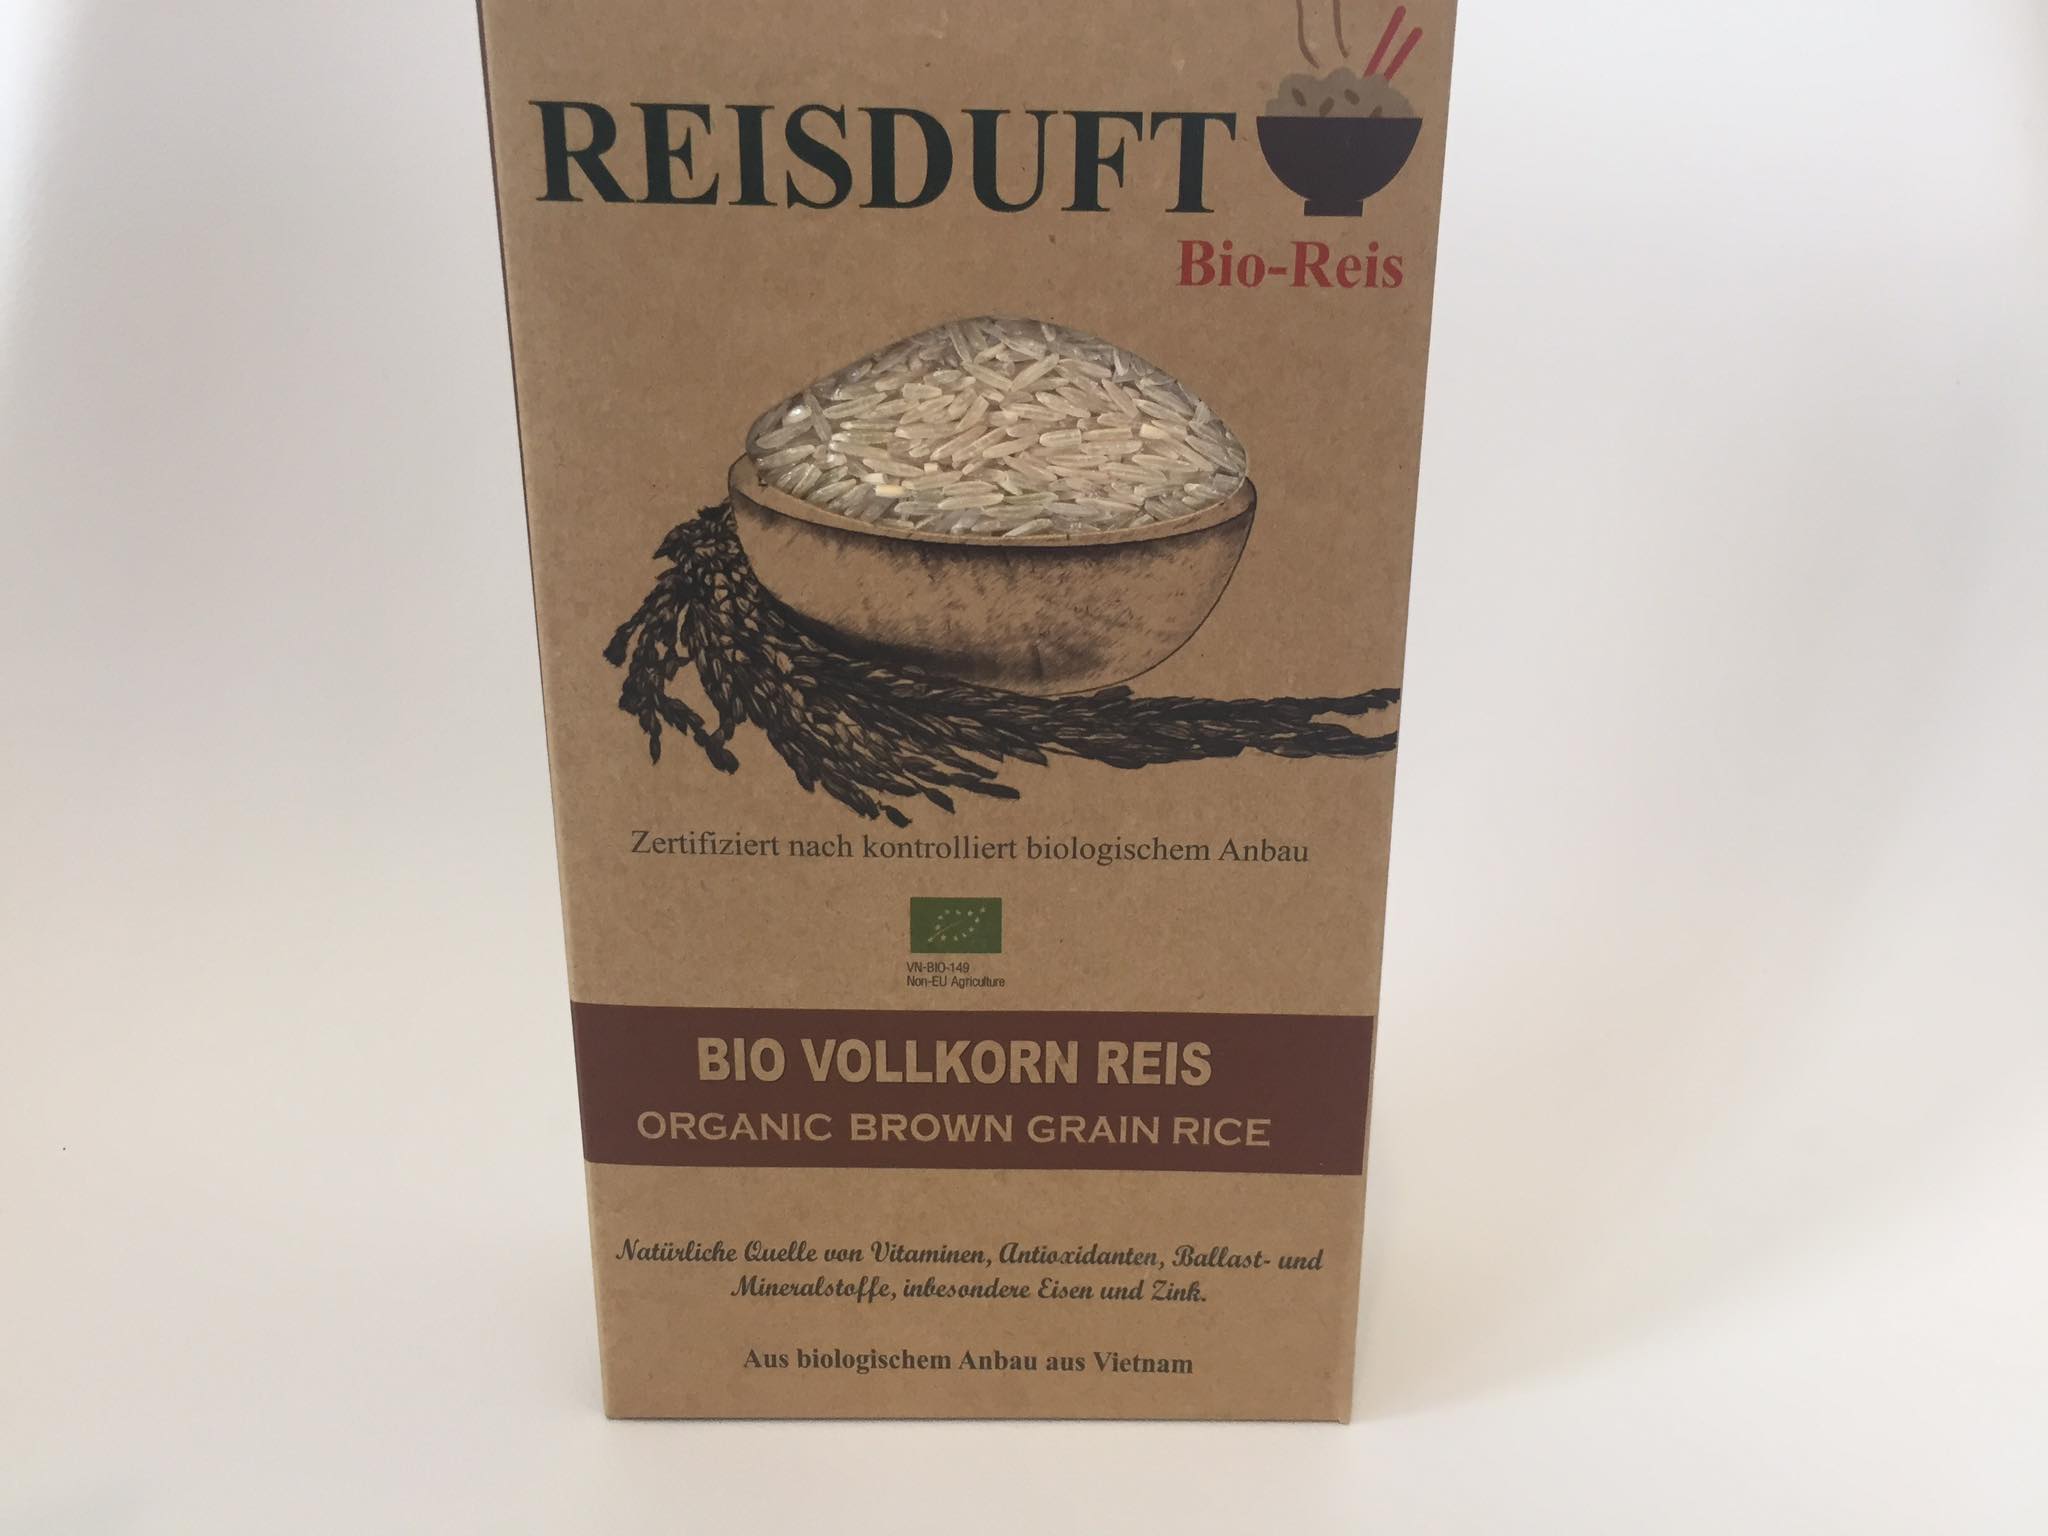 Bio Vollkorn Duftreis 1000g | Reis online kaufen - REISDUFT